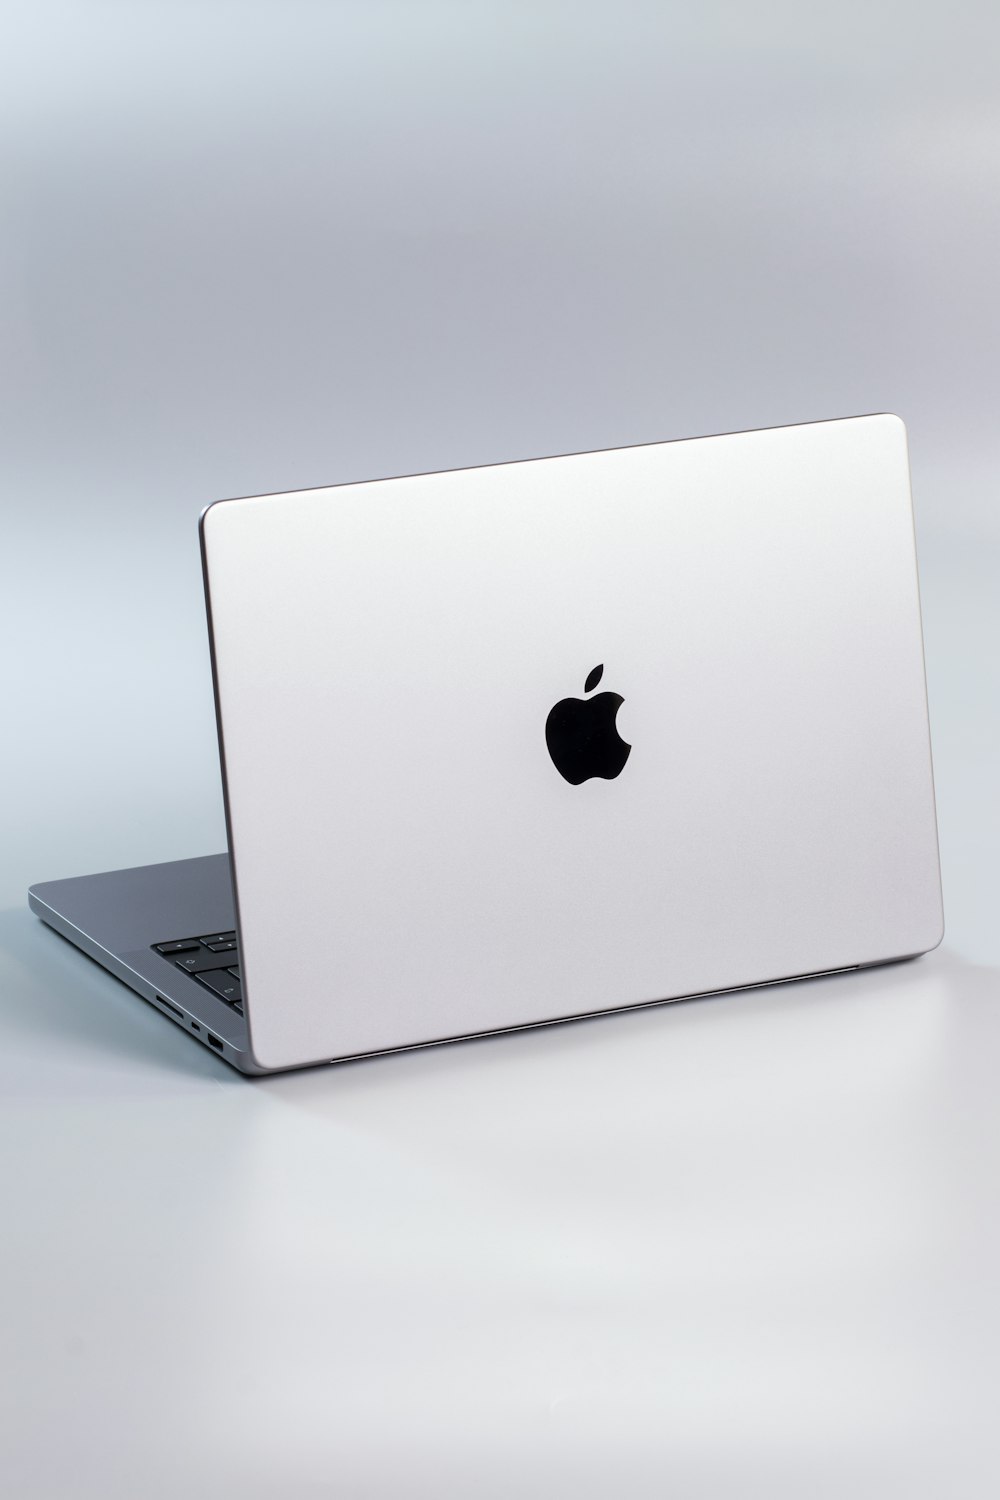 Ein silberner Laptop mit einem schwarzen Apple-Logo auf dem Bildschirm